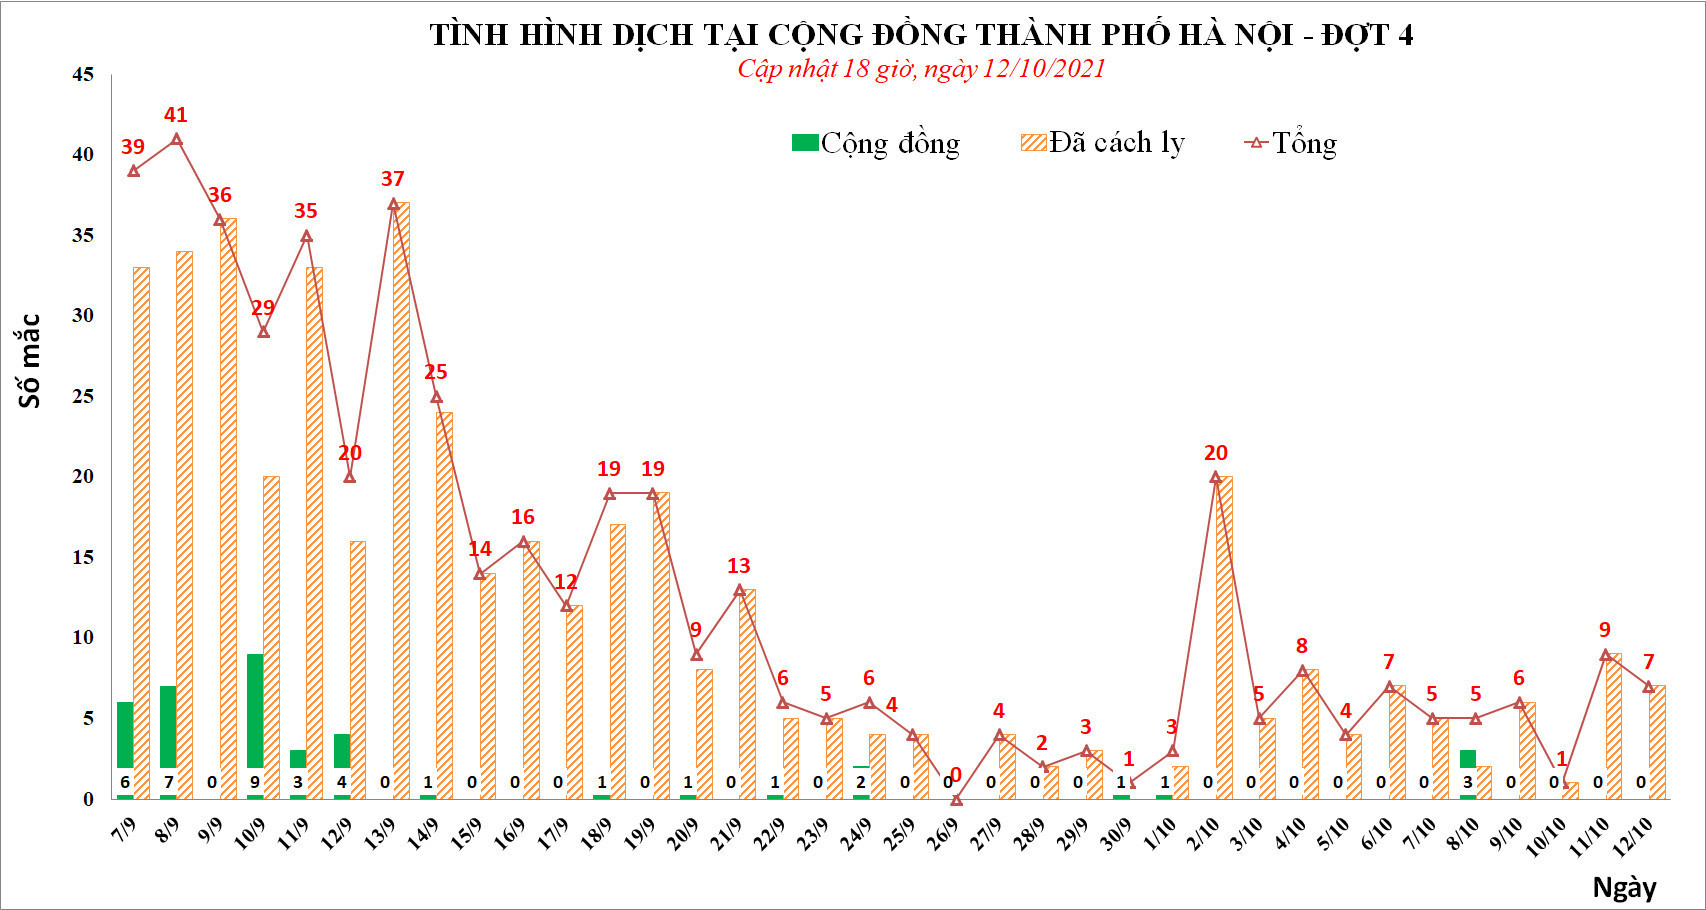 Ngày 12/10, Hà Nội thêm 7 ca mắc Covid-19 mới liên quan Bệnh viện Việt Đức